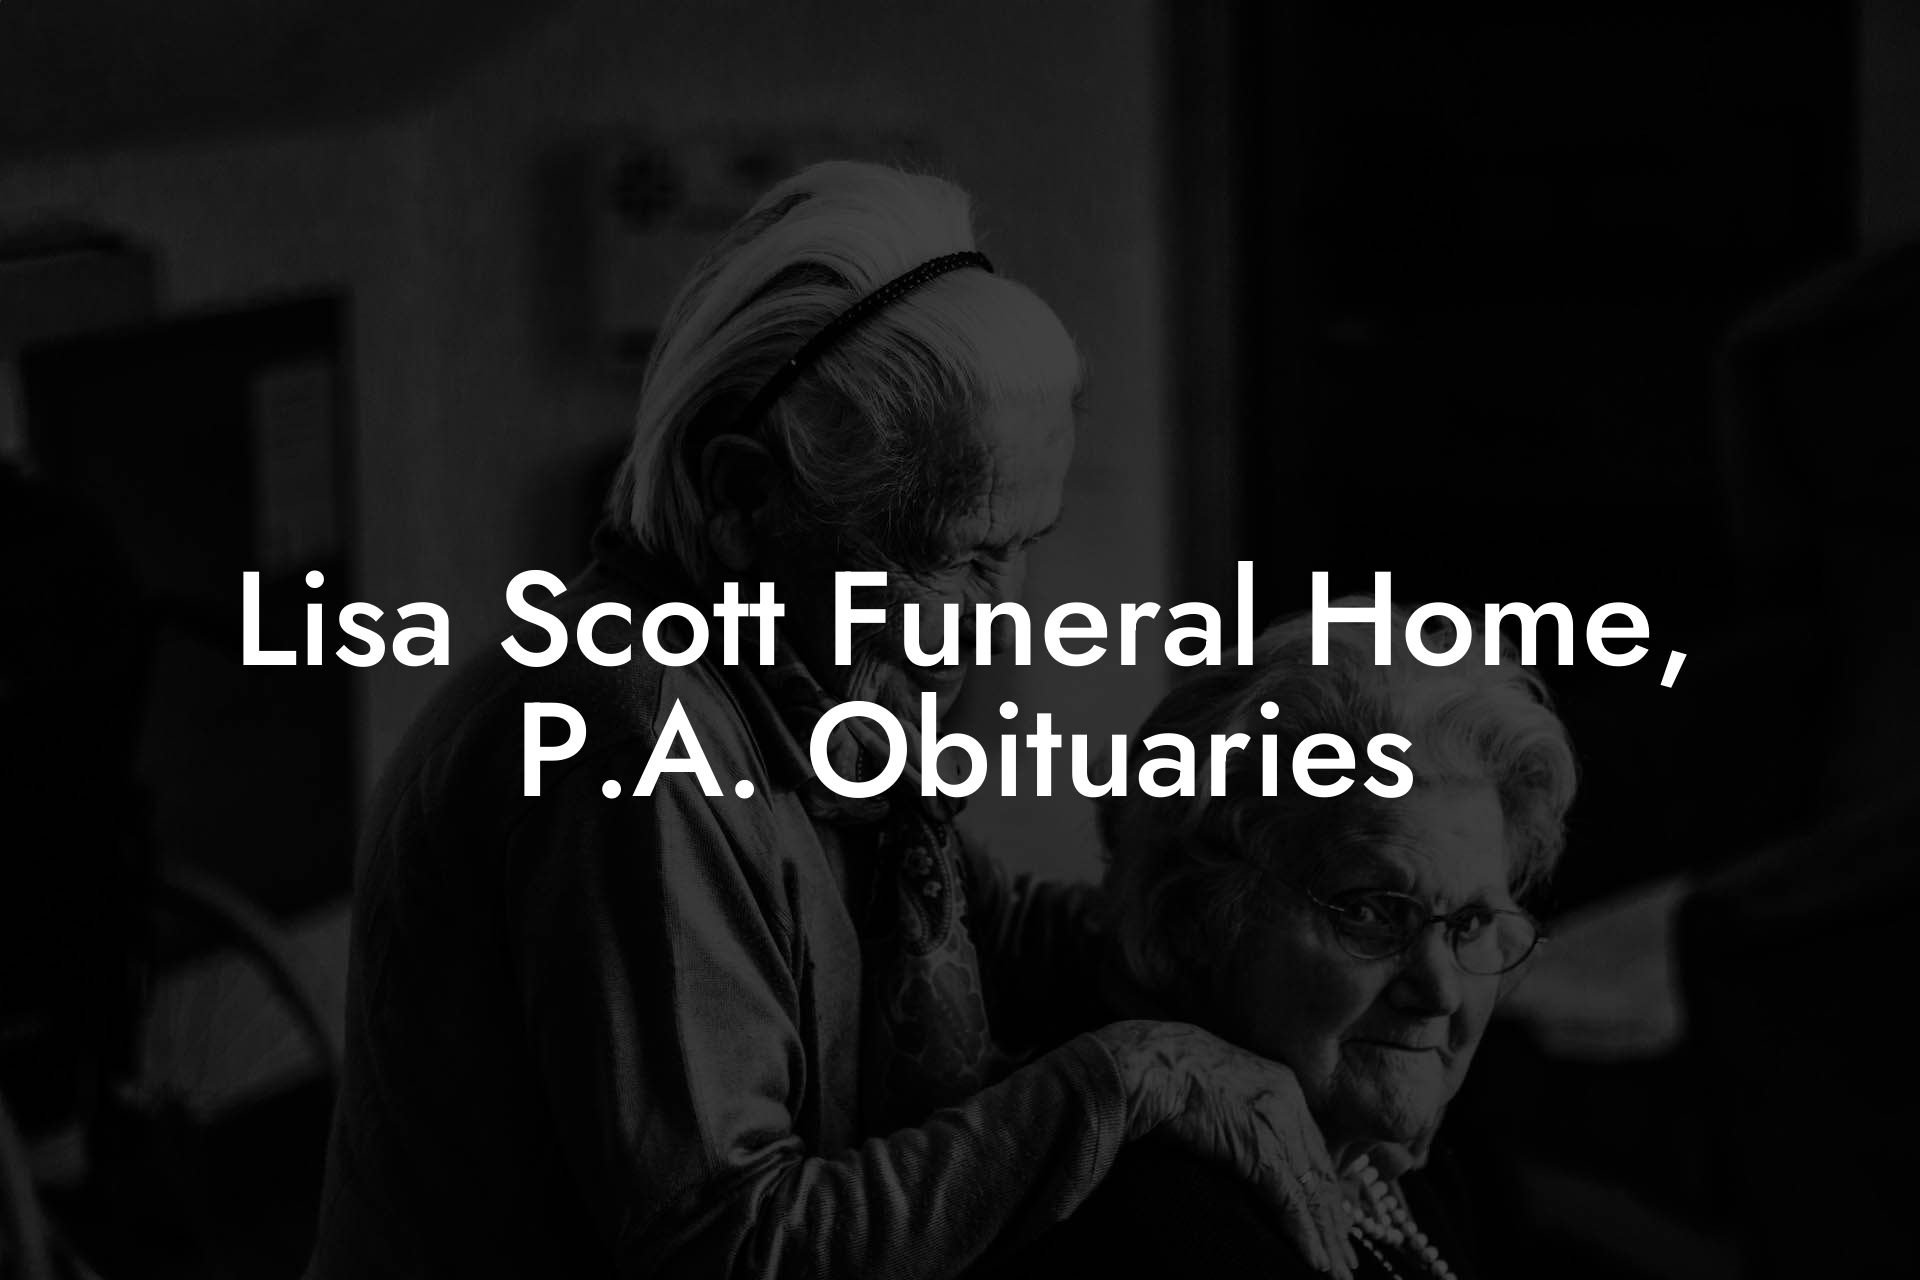 Lisa Scott Funeral Home, P.A. Obituaries